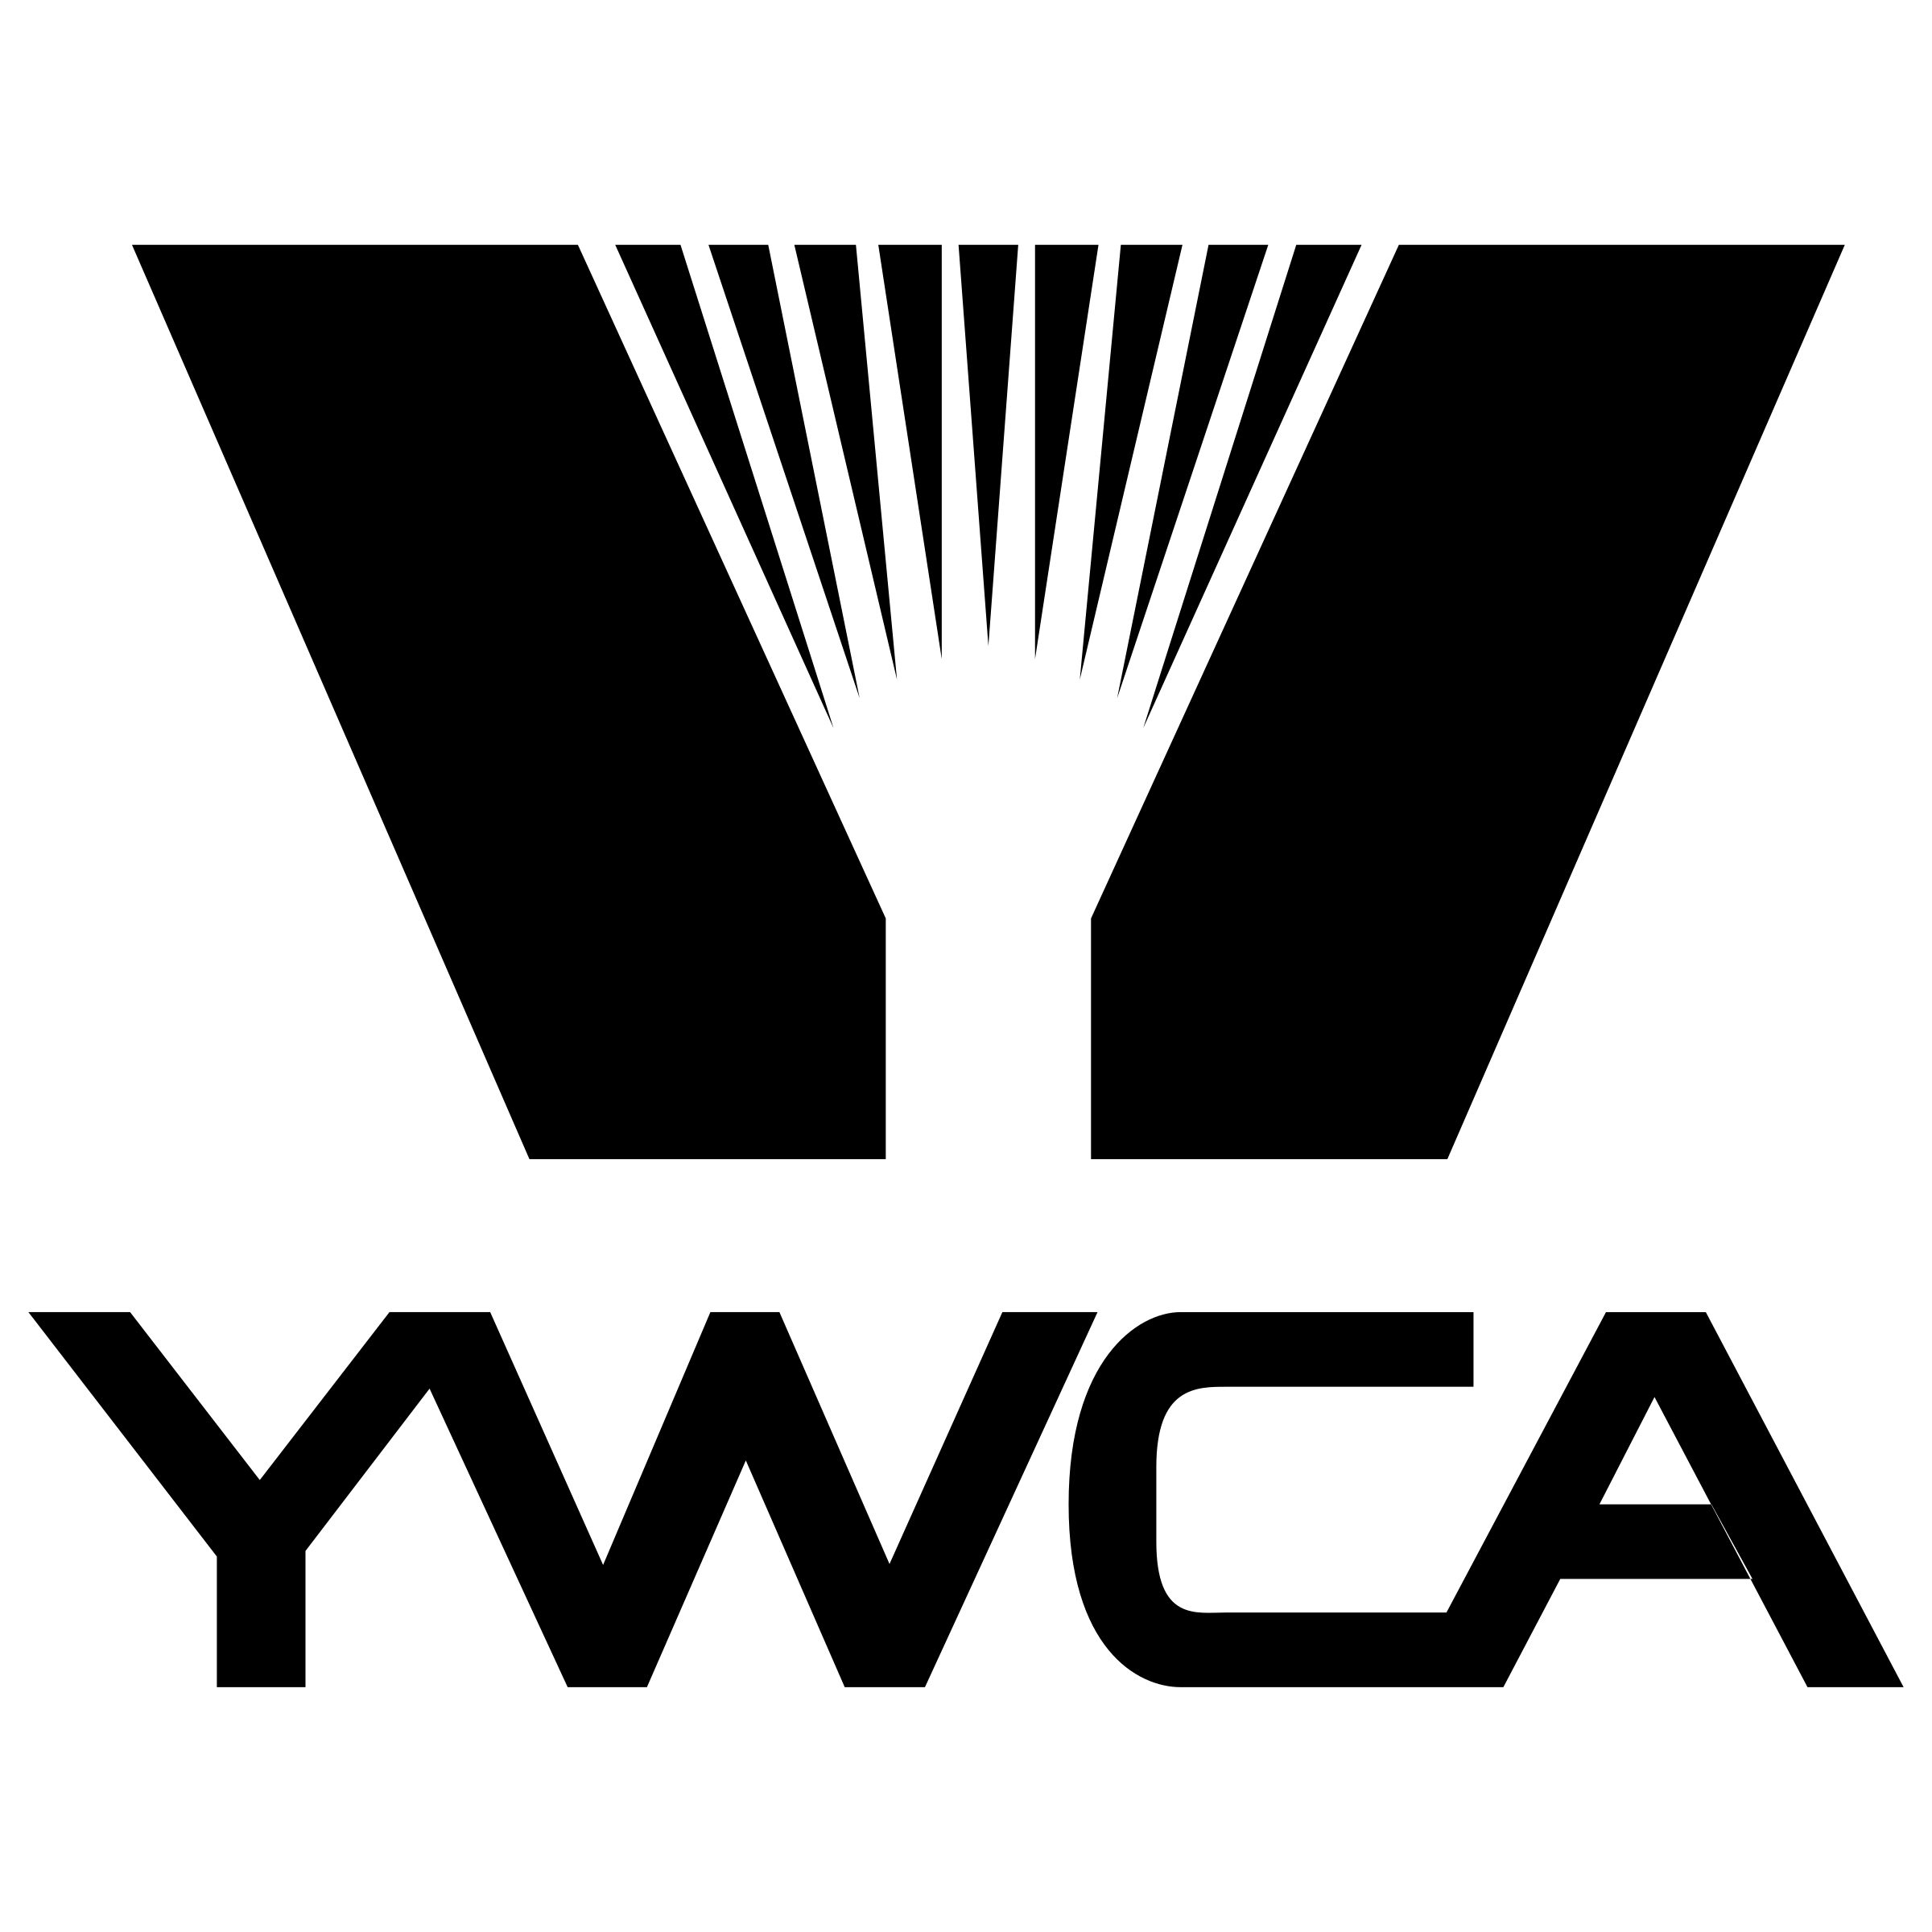 YWCA Logo - YWCA Logo PNG Transparent & SVG Vector - Freebie Supply